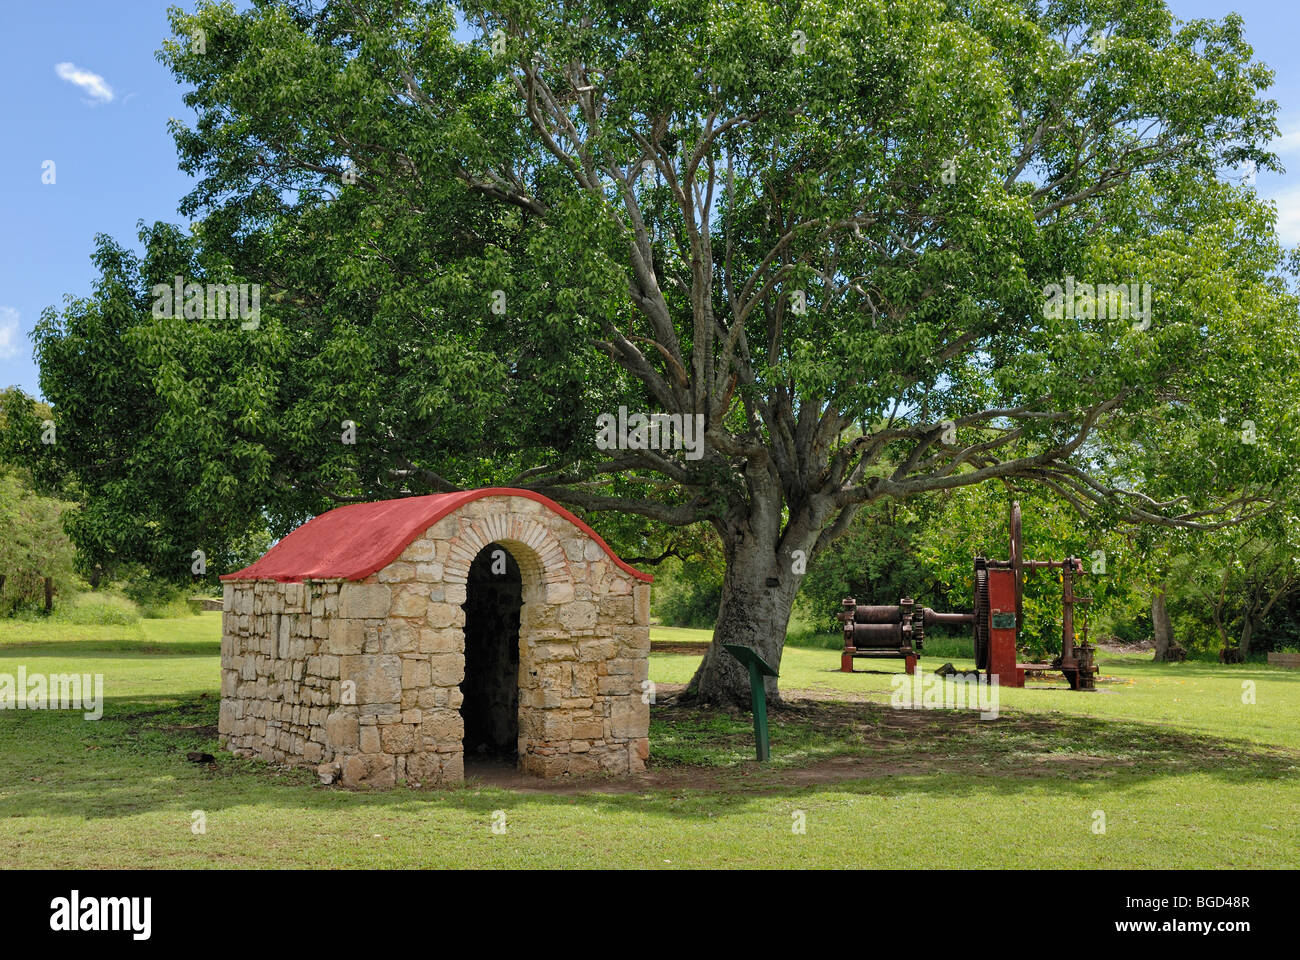 La histórica casa de guardia con una vuelta de arco de entrada y presione la caña de azúcar, Raíces capricho Museum, isla de St. Croix, Islas Vírgenes de EE.UU. Foto de stock